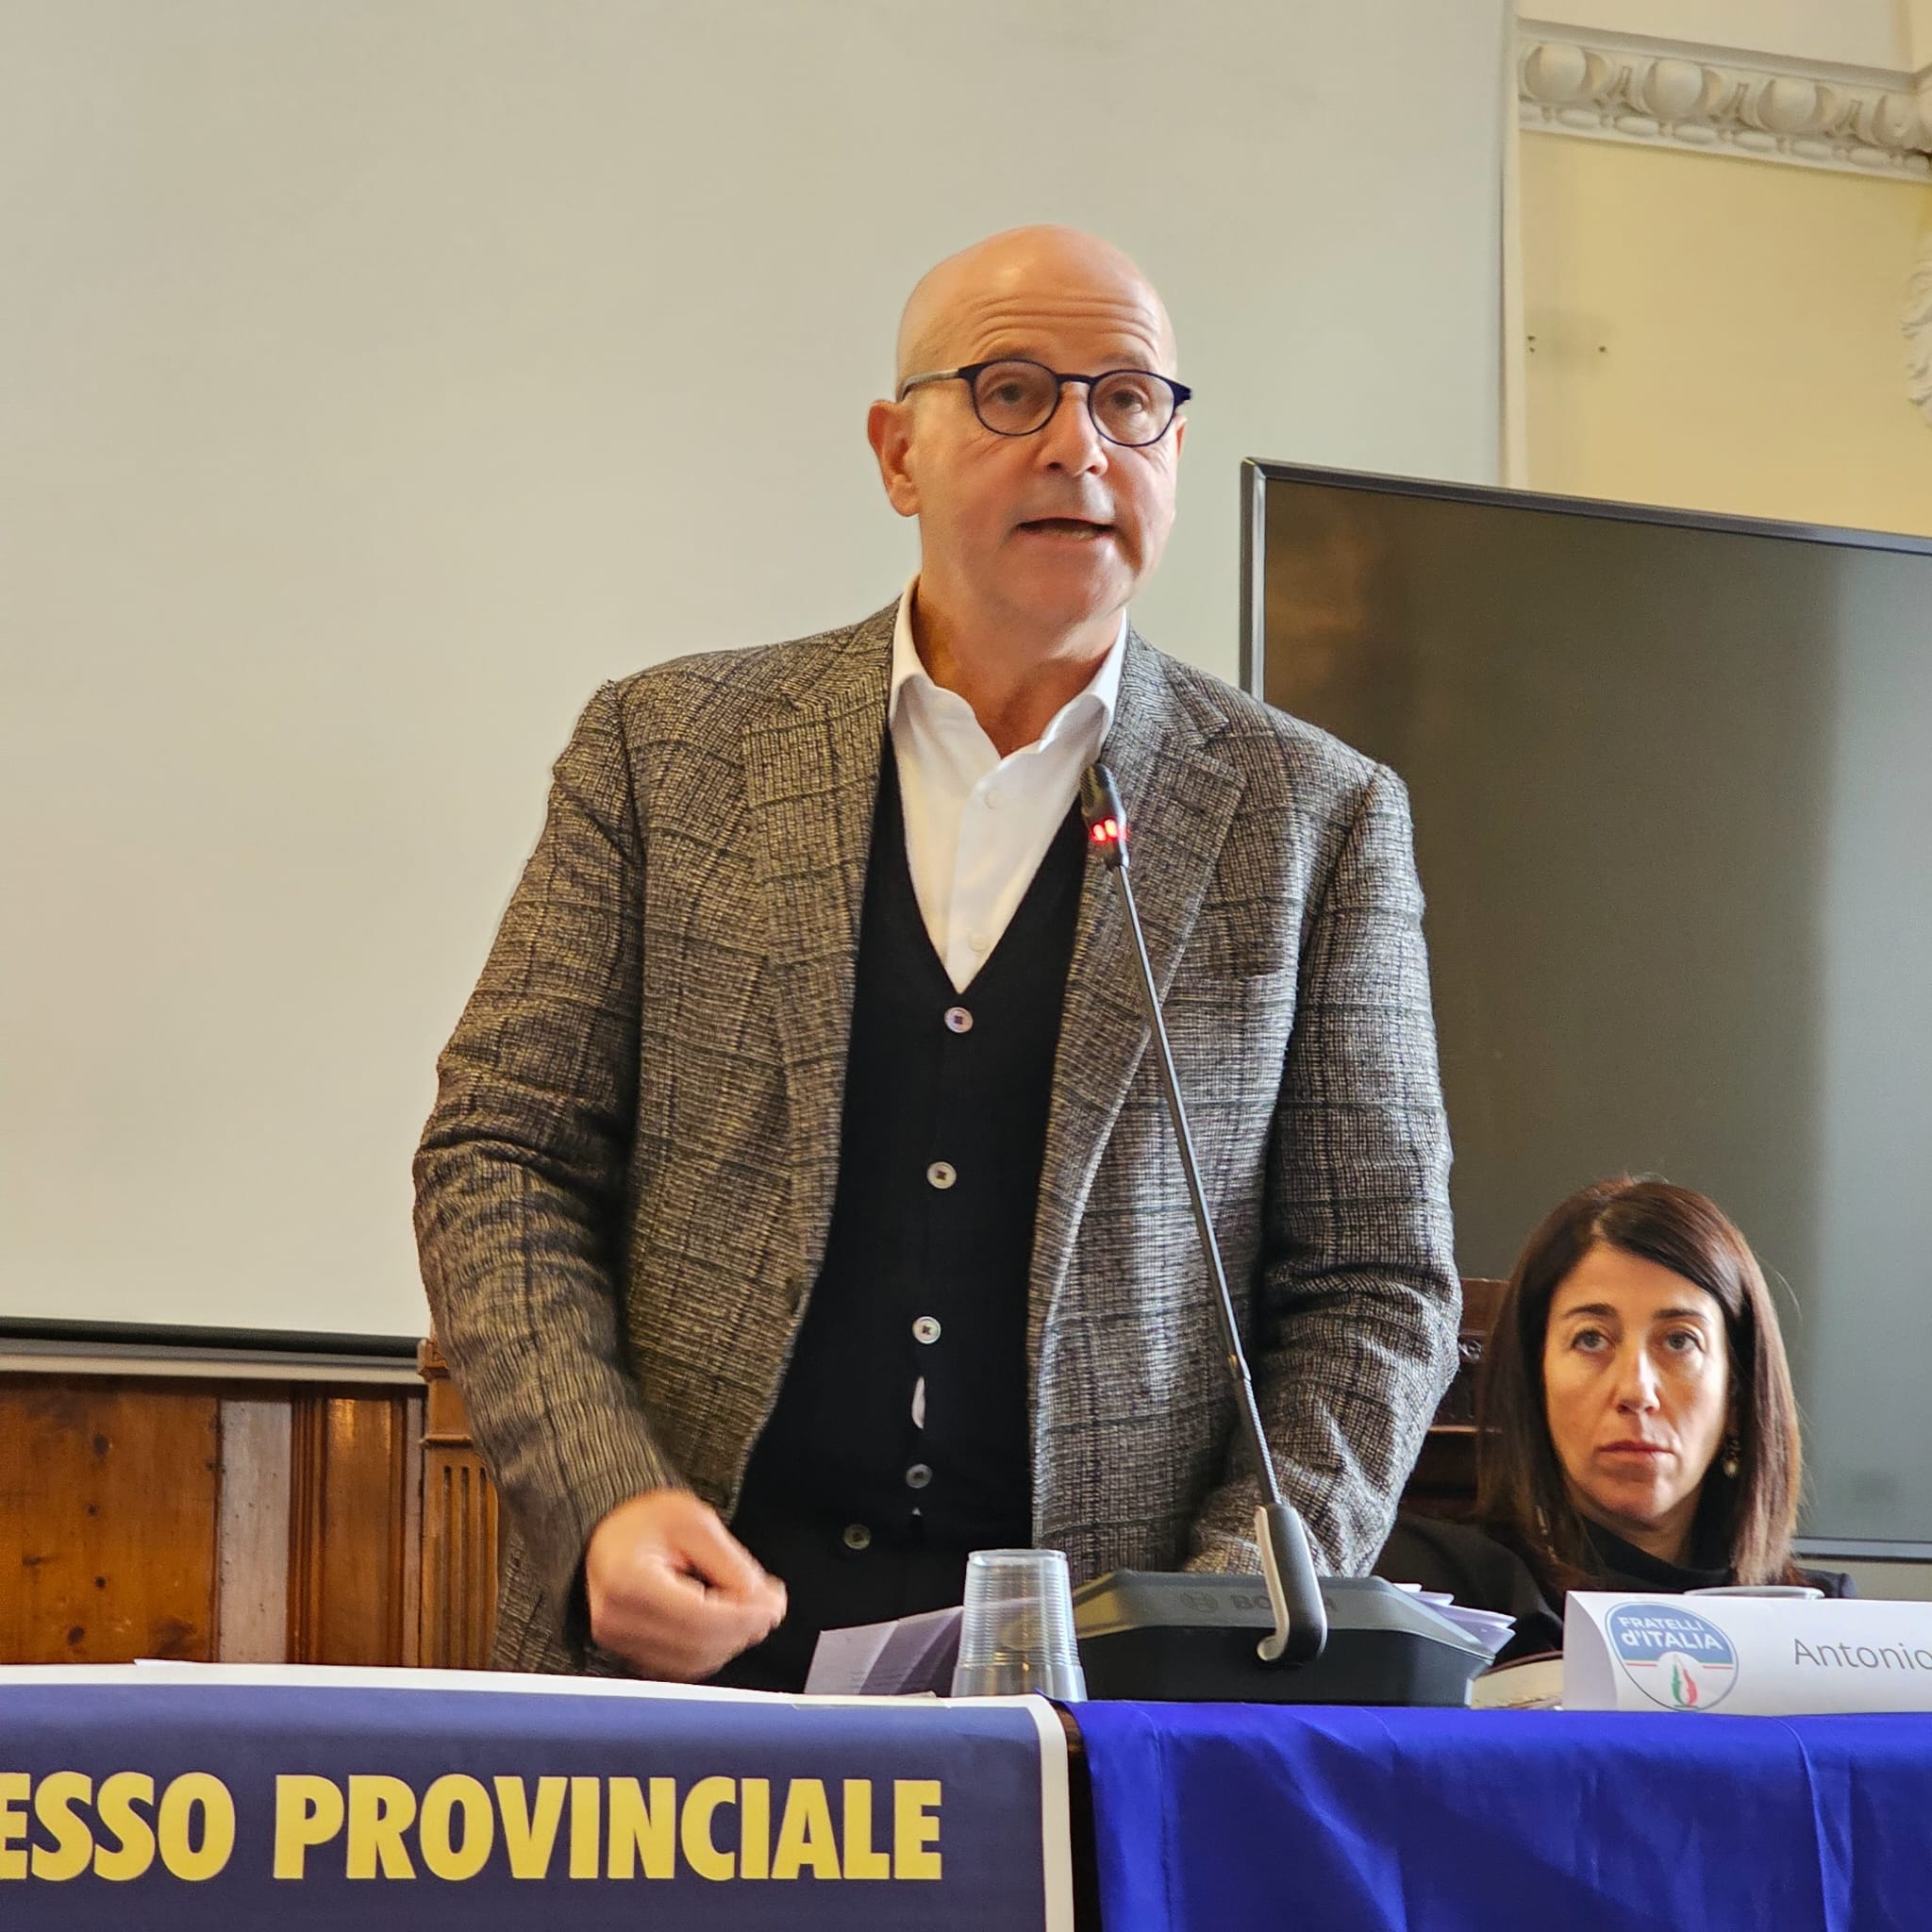 Successo al Congresso Provinciale di Fratelli d'Italia Chieti: Antonio Tavani eletto Presidente con Ampio Consenso